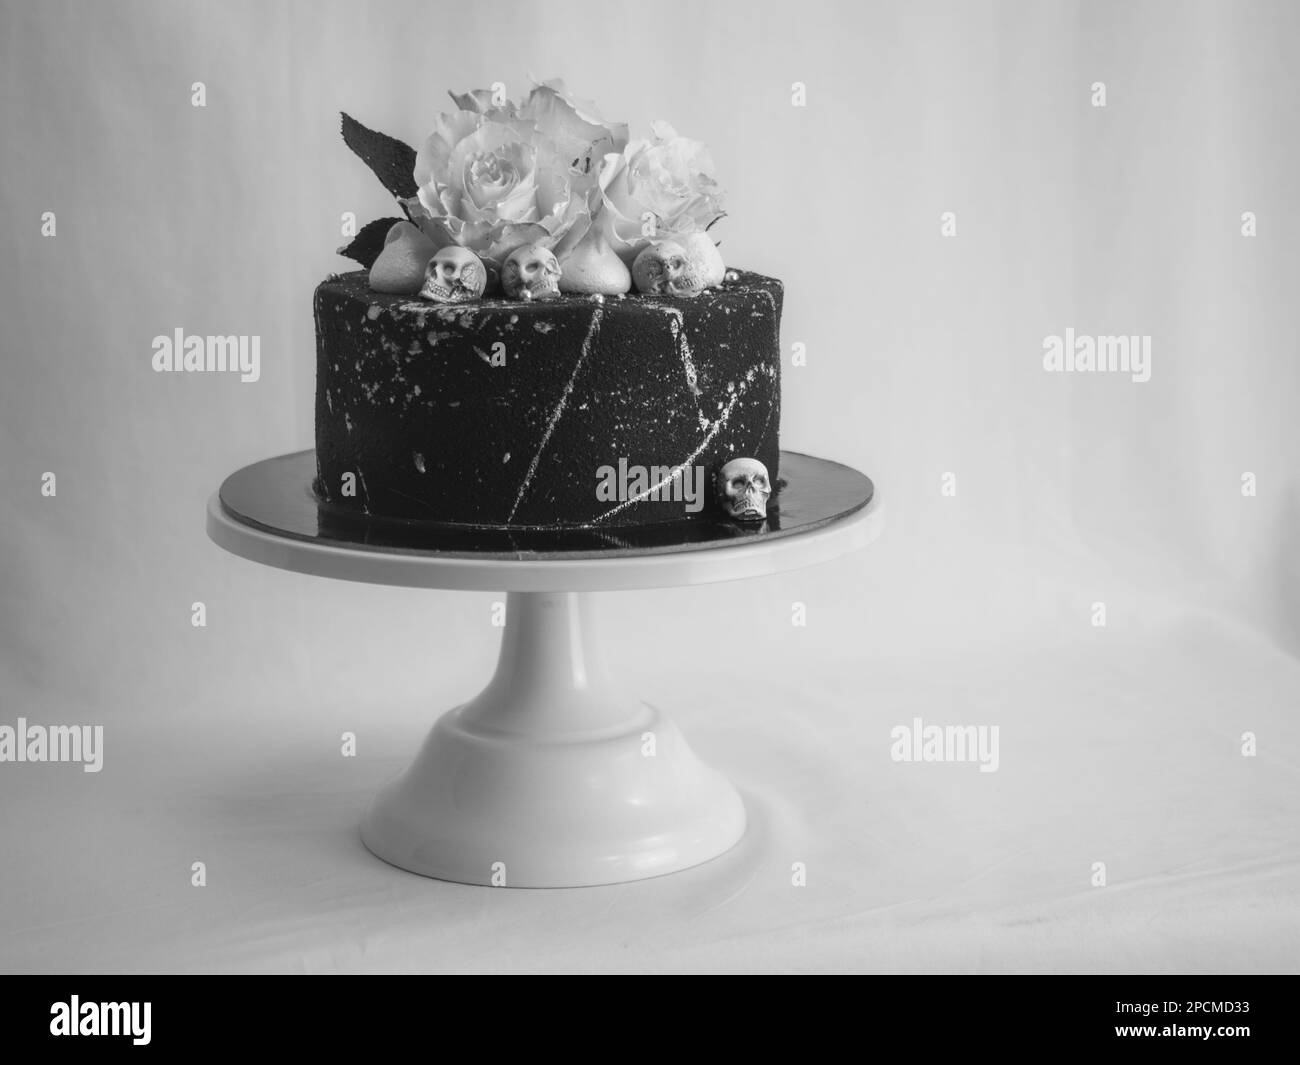 torta glassata con airbrush nero di compleanno dipinta, due vere rose in argento spruzzato e toppa al cioccolato commestibile e pennellate in argento Foto Stock